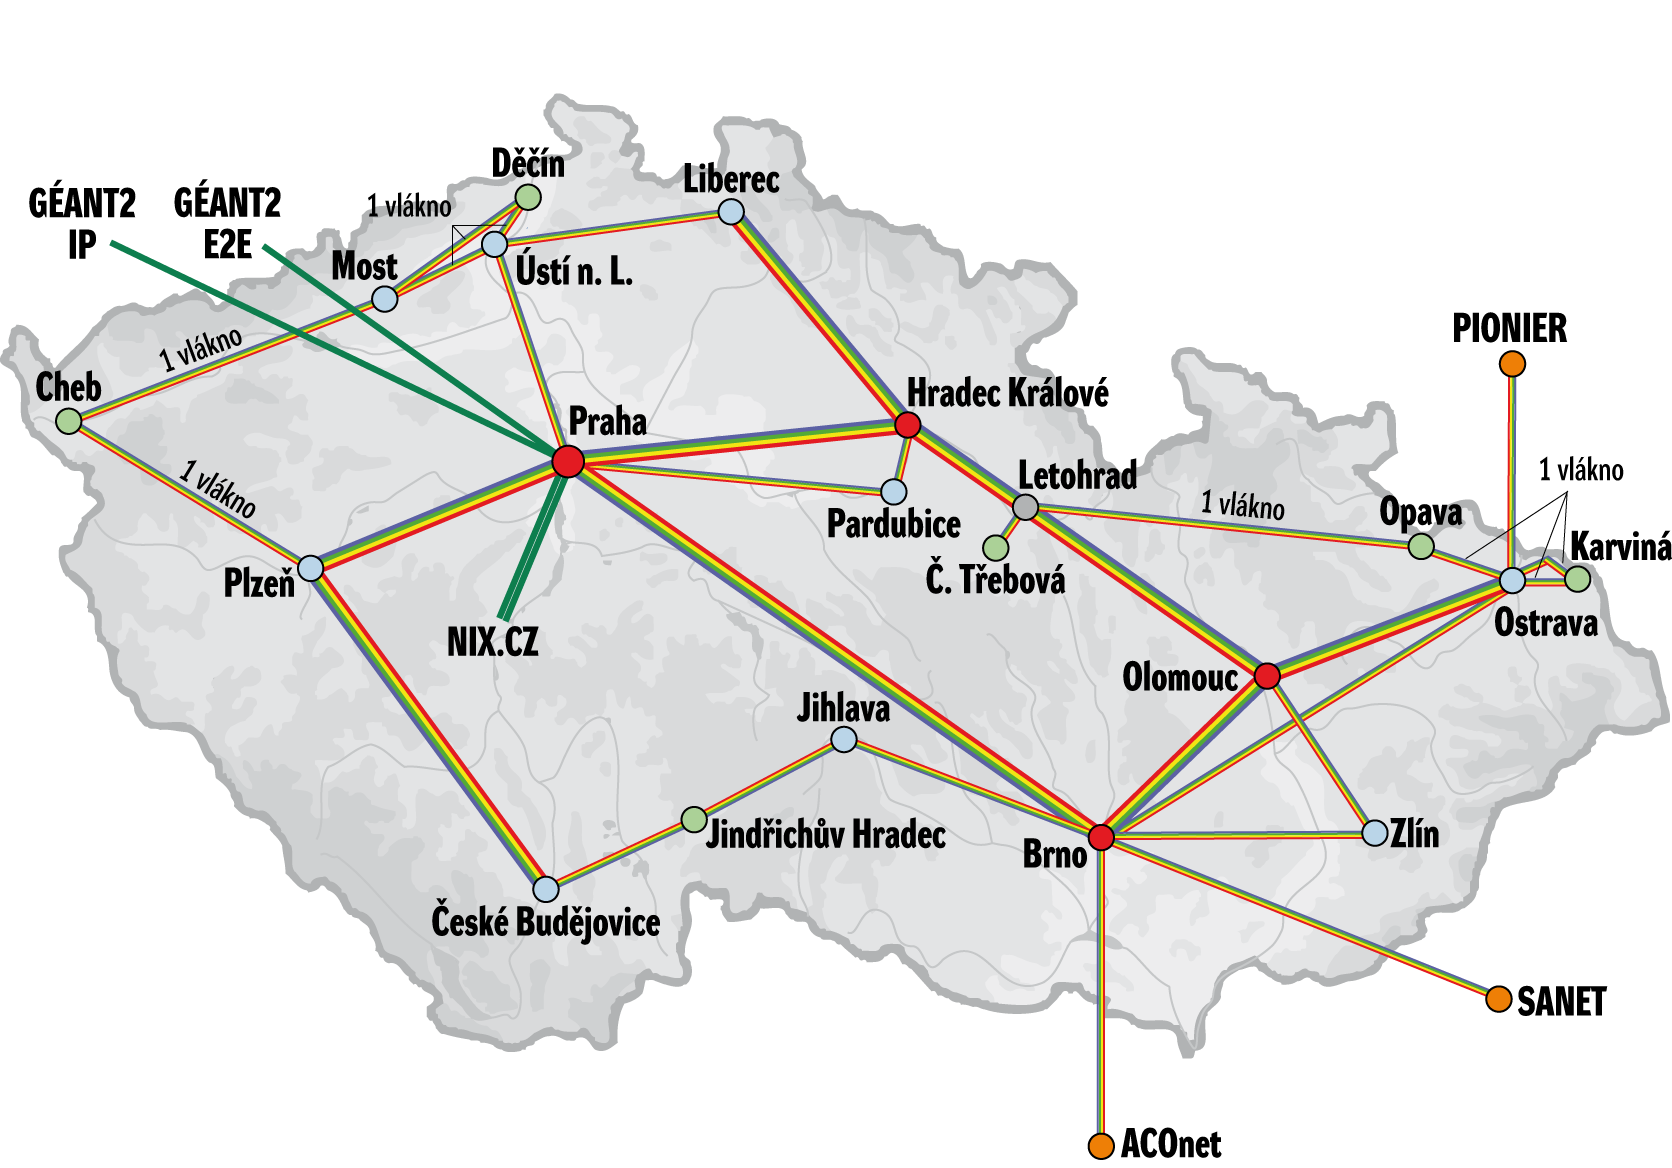 Společná komunikační infrastruktura Optická přenosová infrastruktura Platforma pro stavbu sítí a okruhů Duální připojení uzlů na fyzické vrstvě (optická vlákna) Dostatečné množství